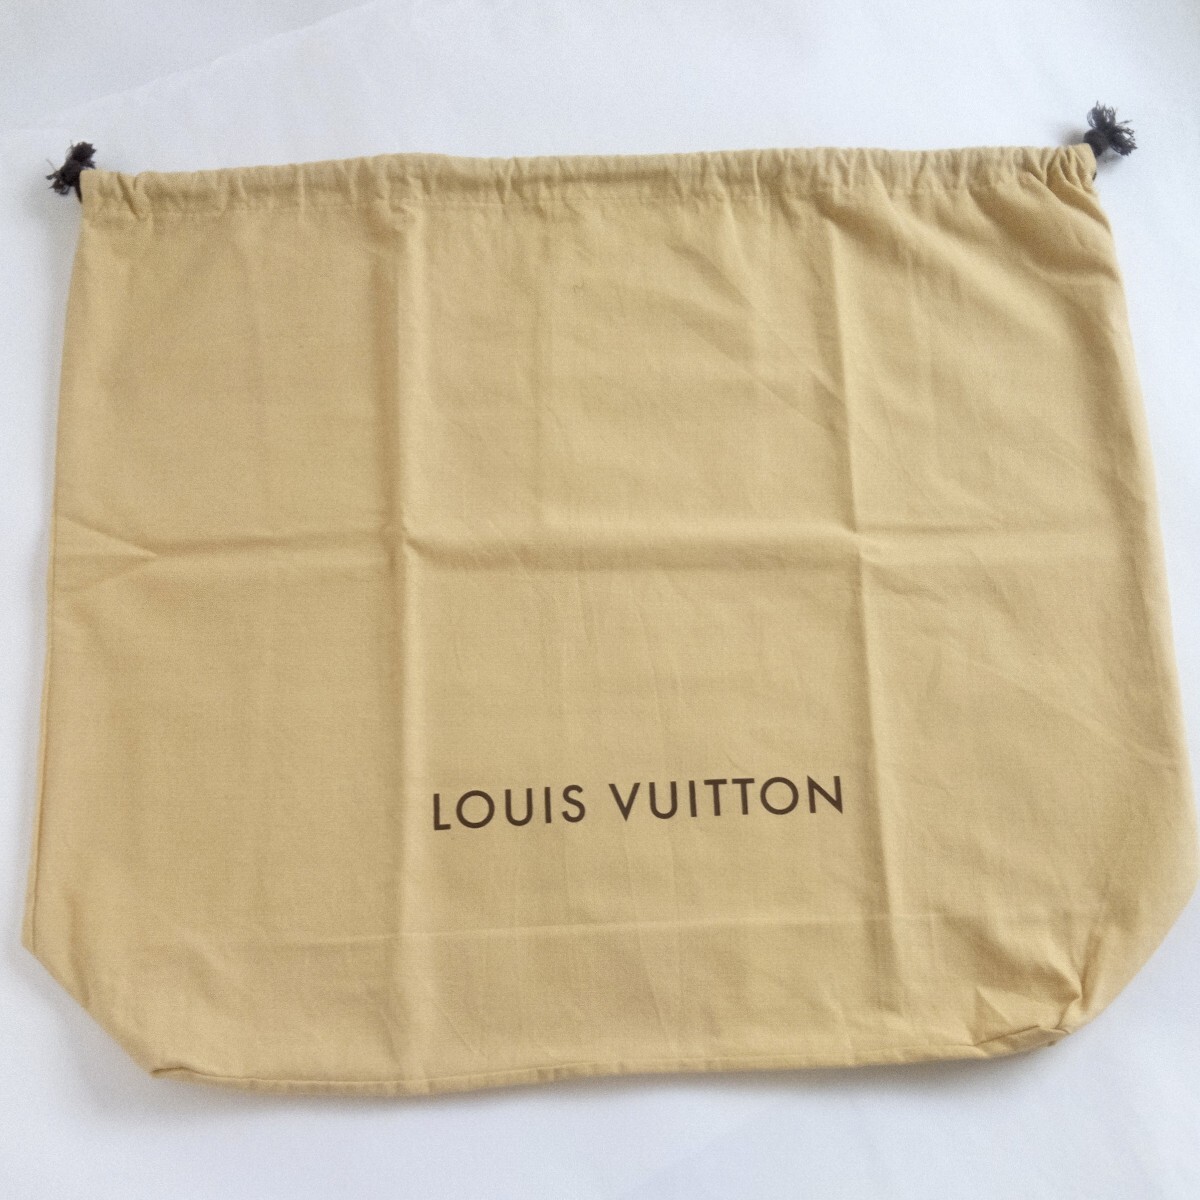 〔ルイヴィトン〕58×50×15cm バッグ保存袋 巾着袋 布袋 保管袋 LOUIS VUITTON 正規品 マチあり 大きめ （0086)の画像1